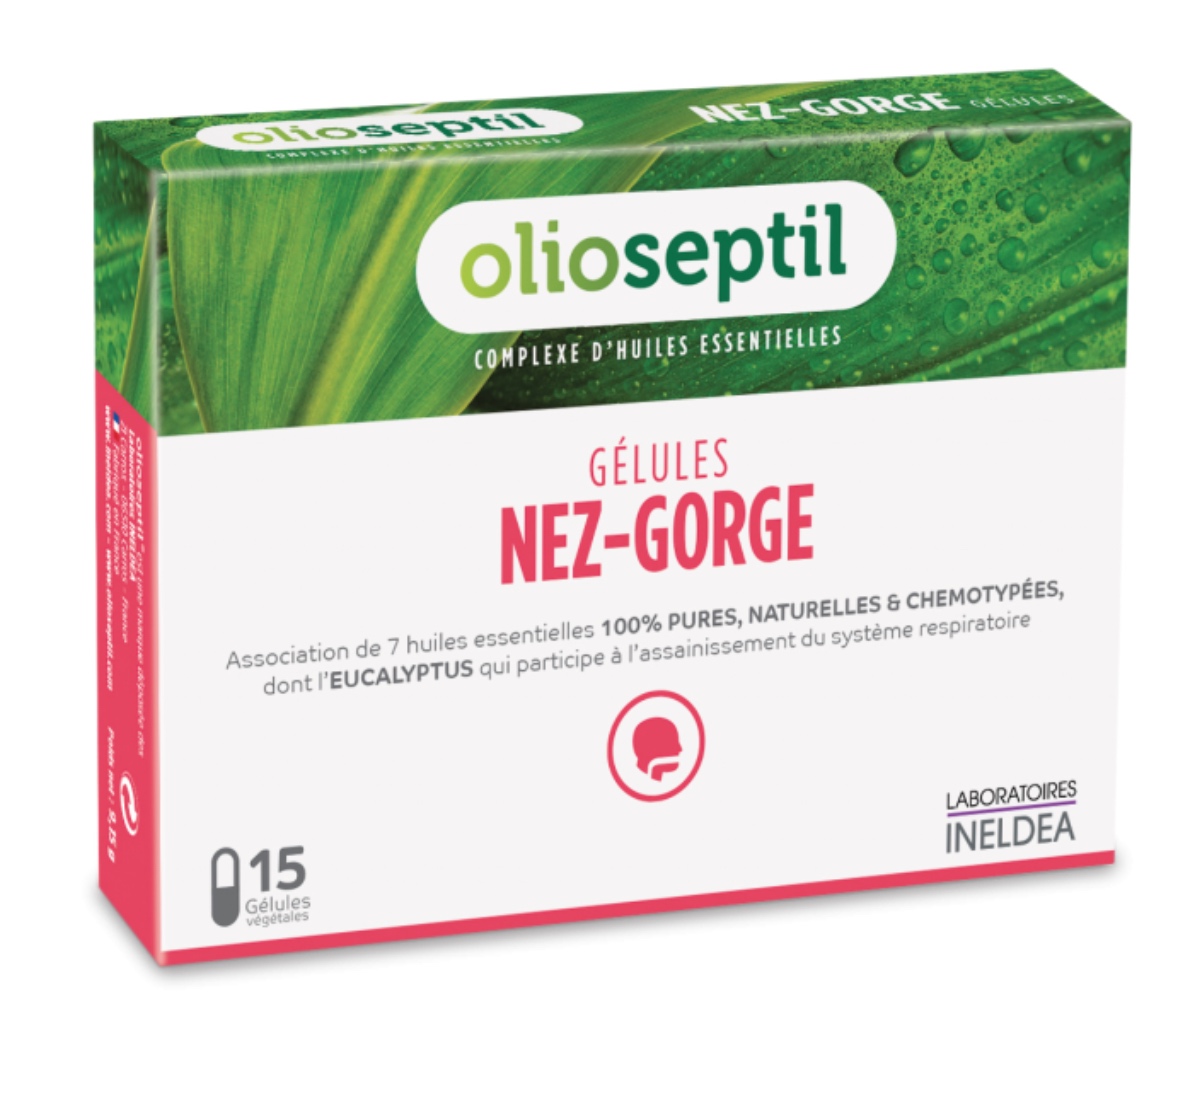 Olioseptil gélules Nez gorge aux huiles essentielles - 15 gélules